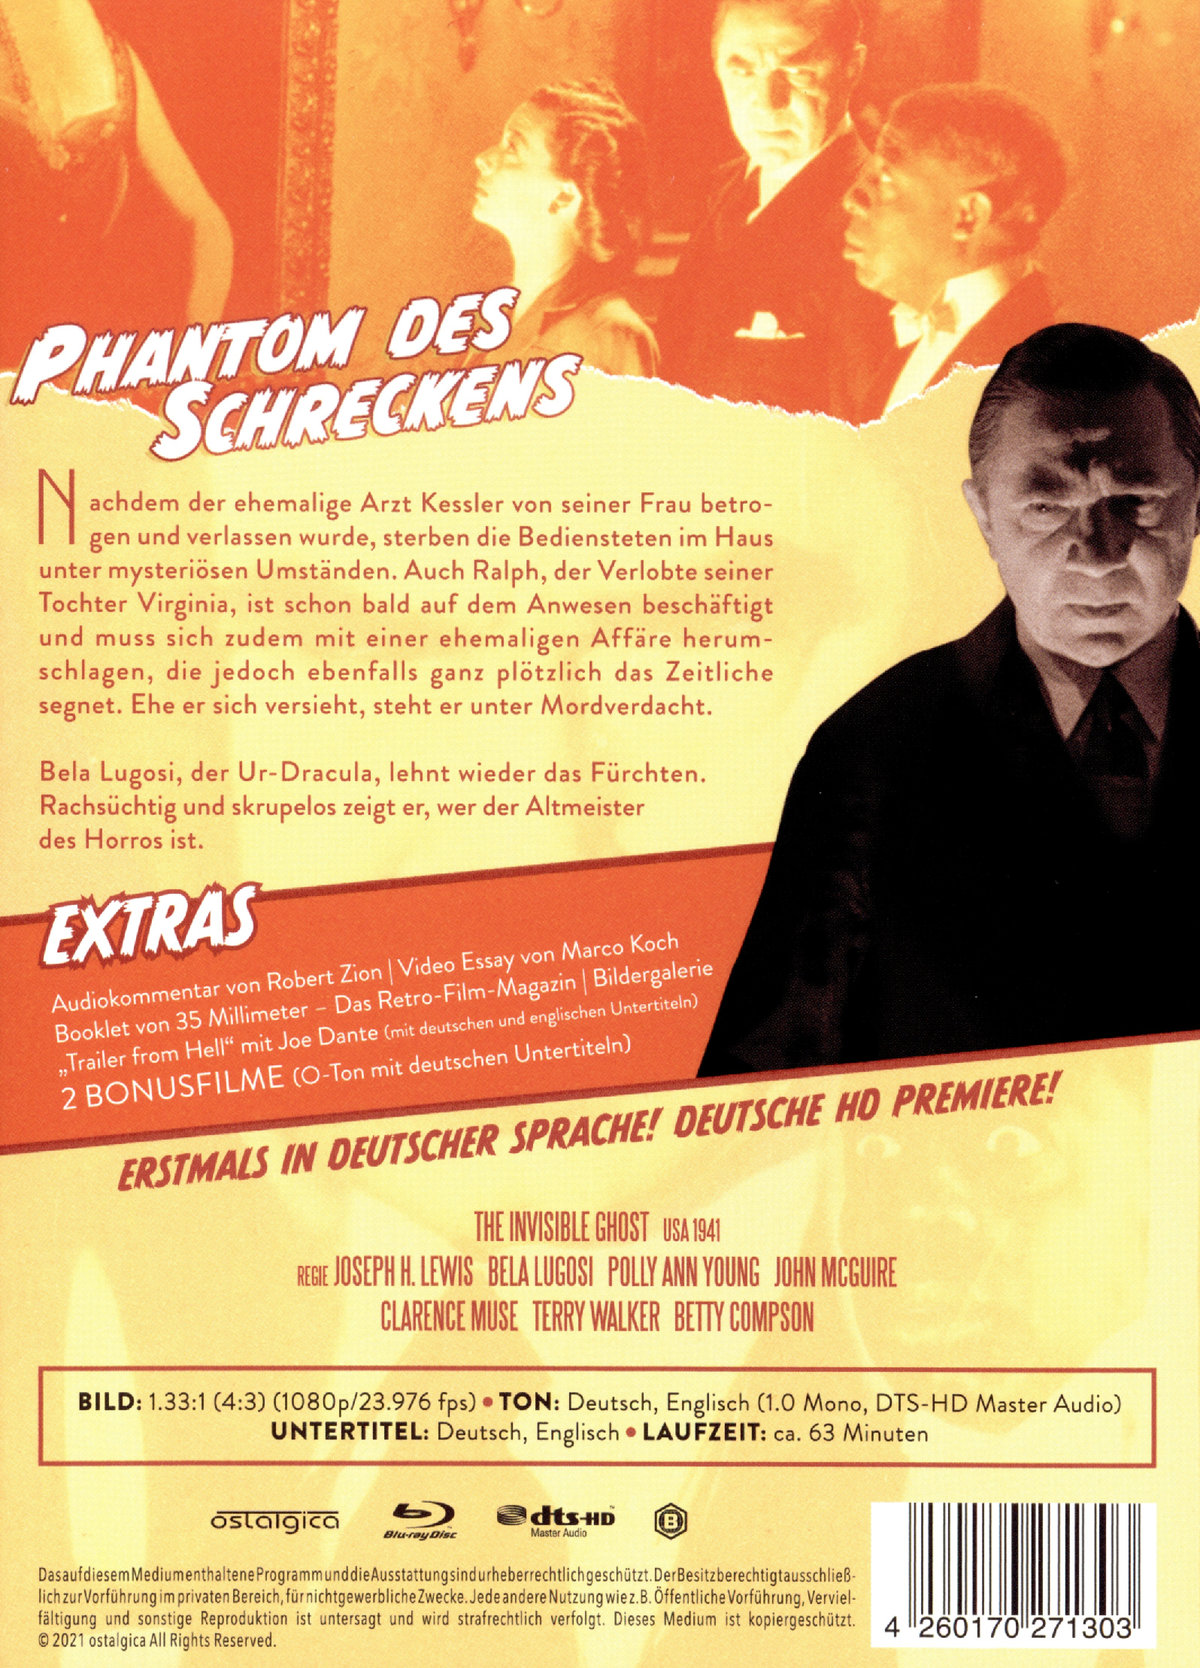 Phantom des Schreckens - Limited Edition (blu-ray)